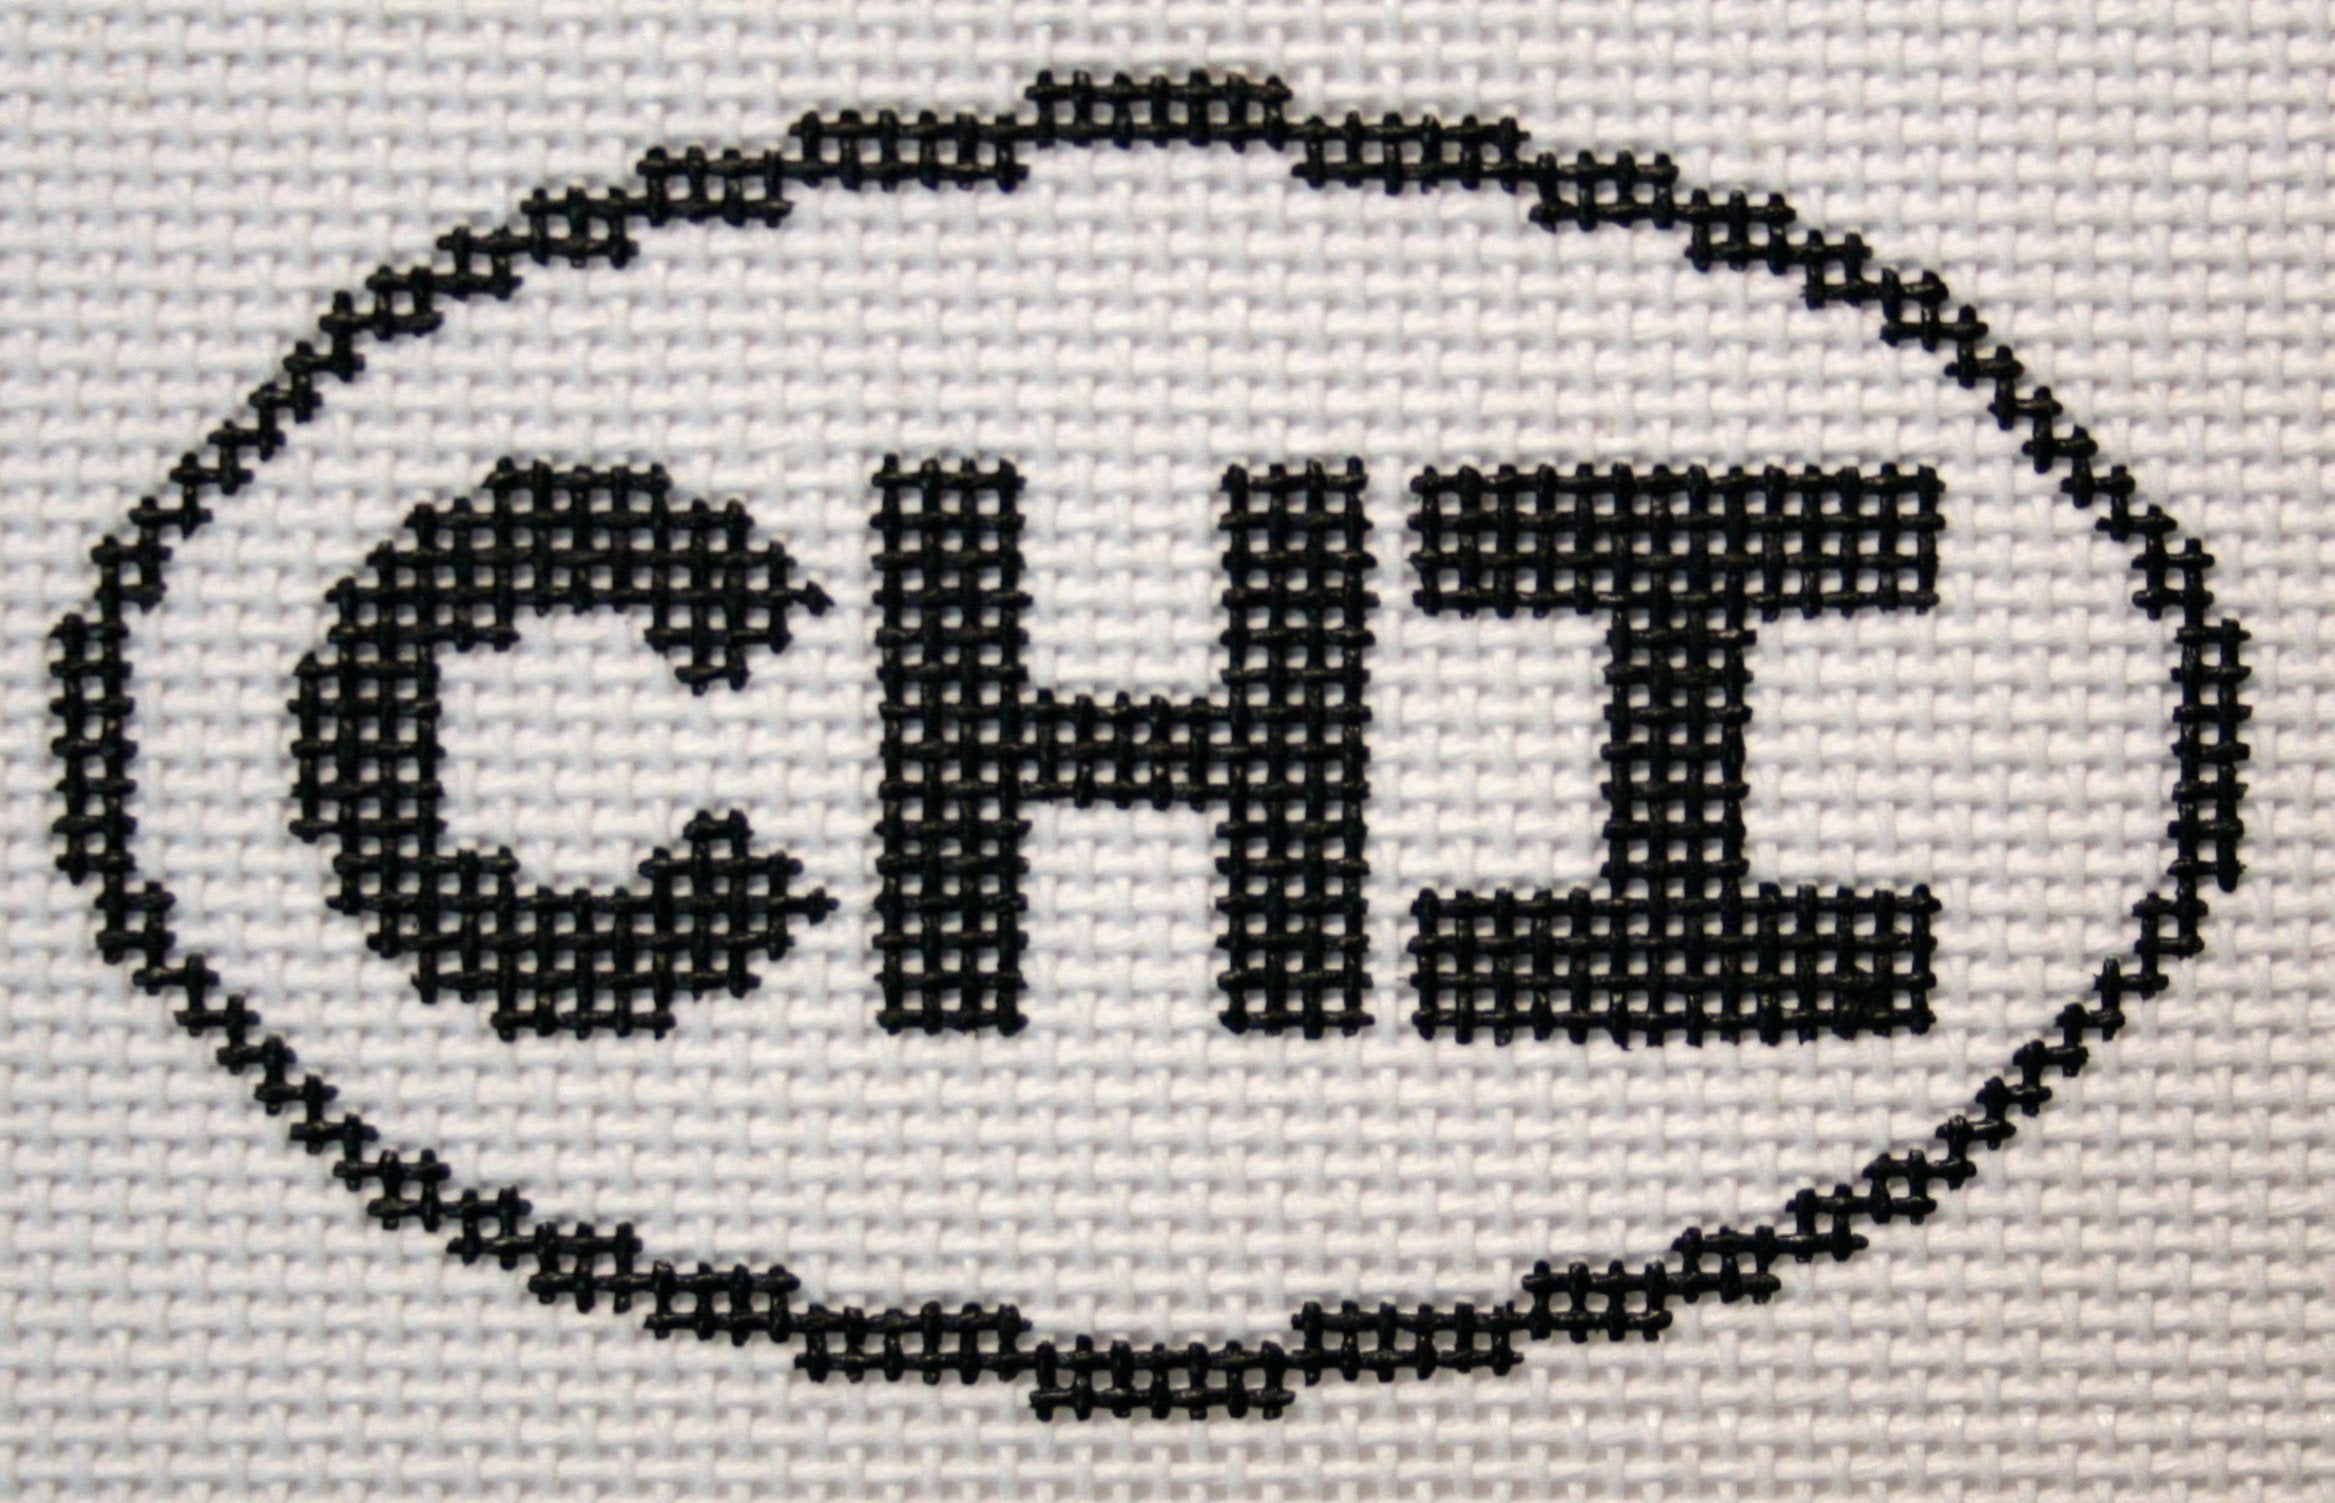 CHI (Chicago, IL) Oval Ornament